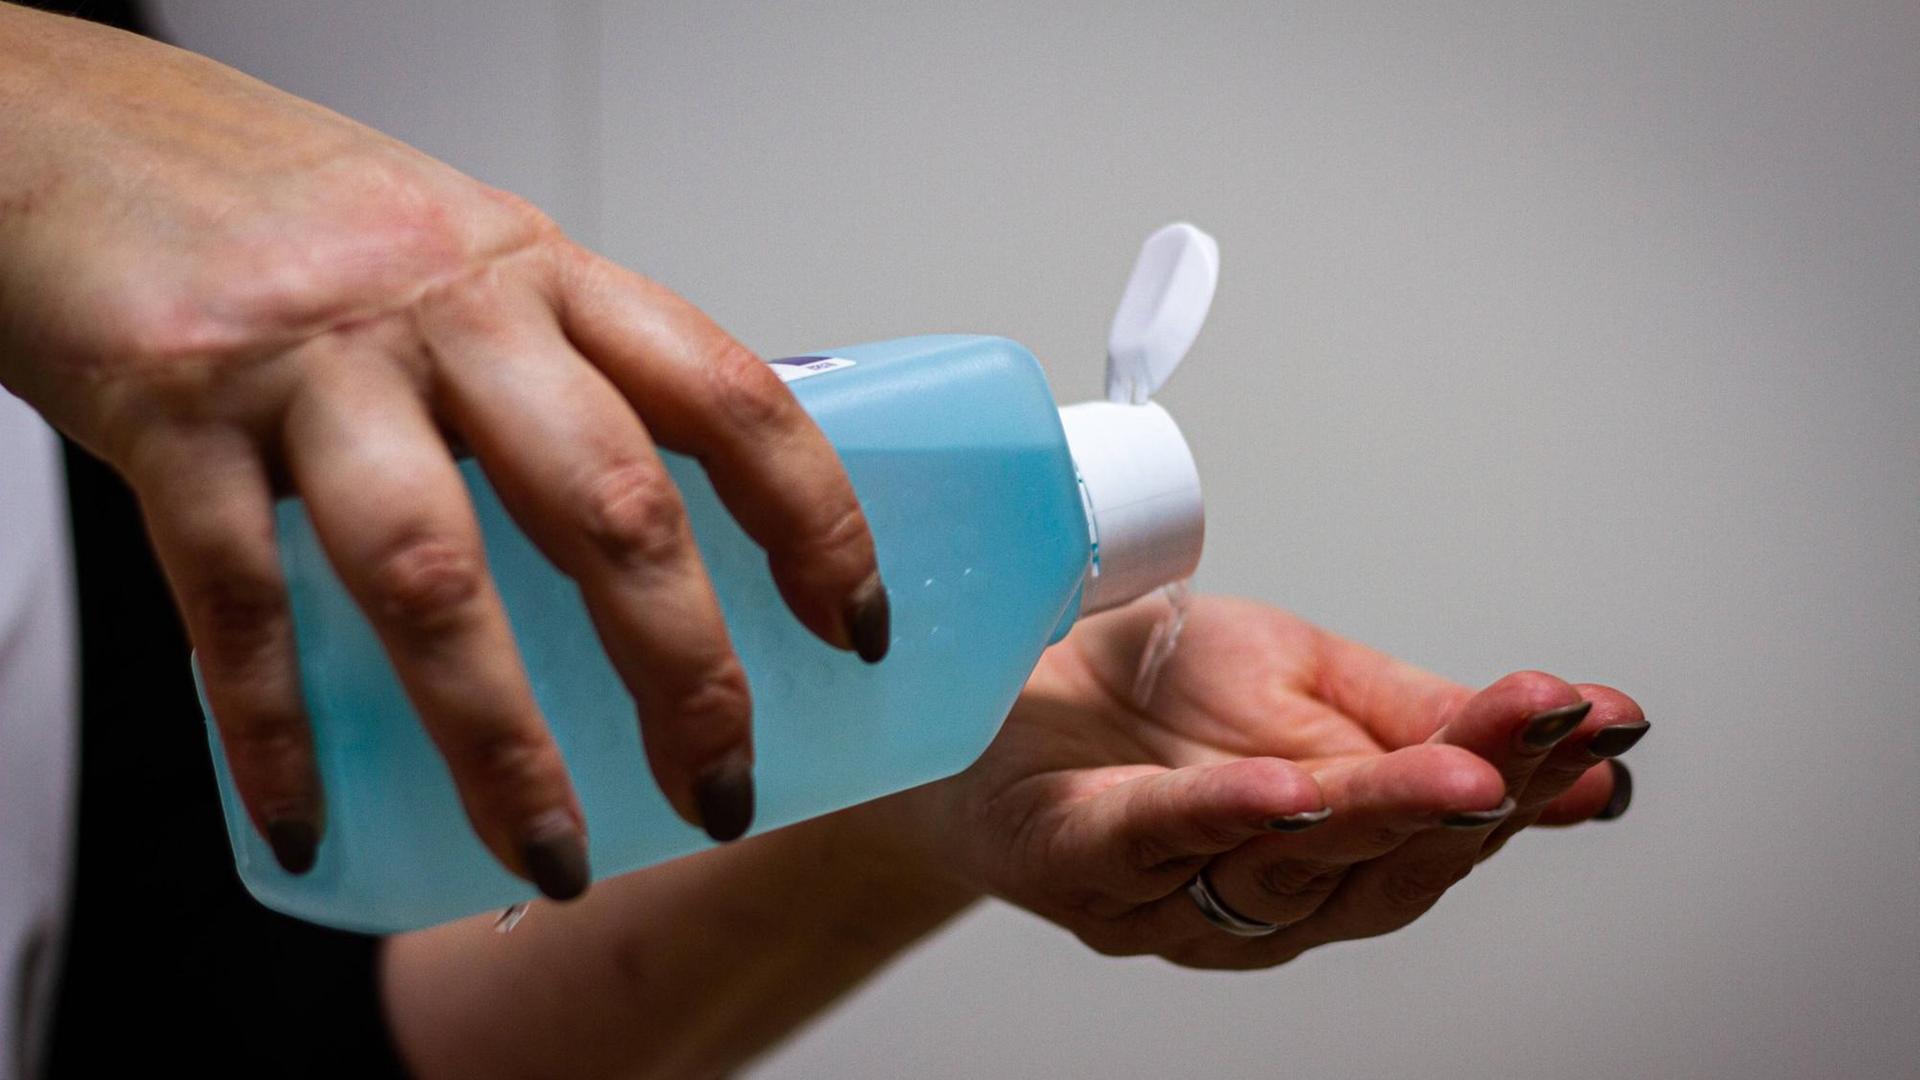 Eine Person hält eine große blaue Flasche Desinfektionsmittel in den Händen und kippt die Flüssigkeit in die linke Hand.